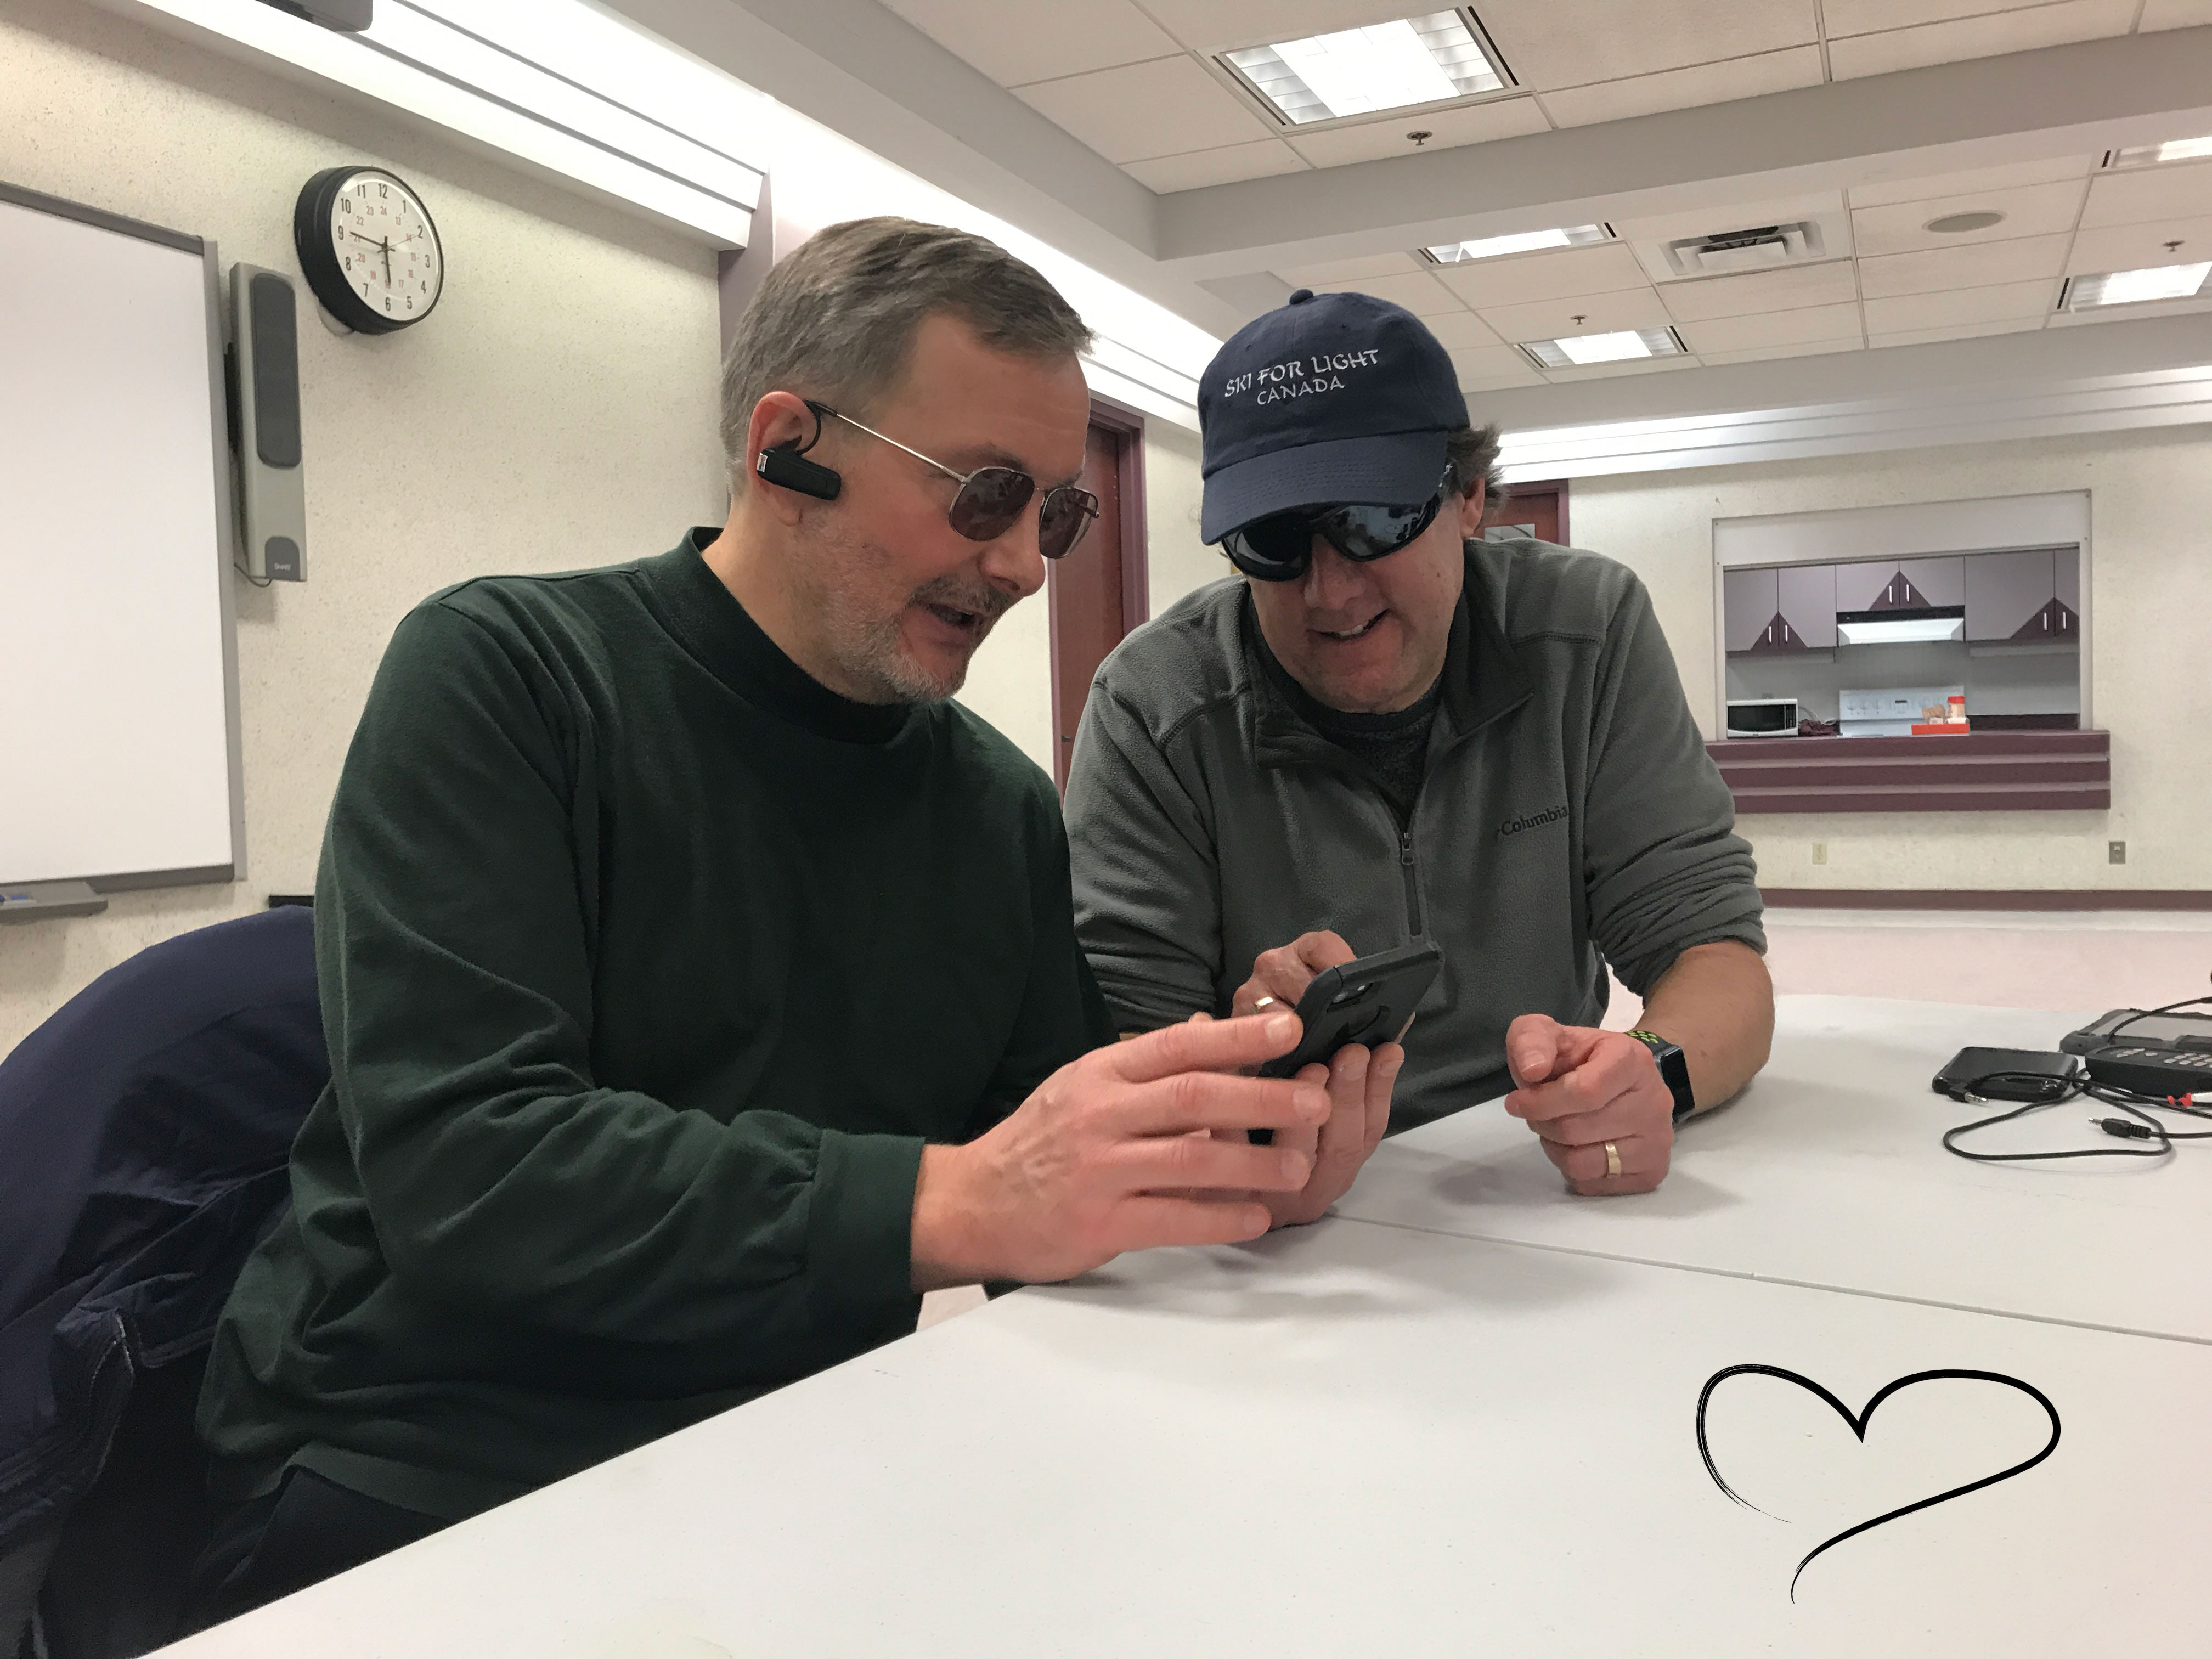 Lloyd Buckler, assis à une table, aidant quelqu'un à apprendre à utiliser son iPhone. Un dessin en forme de cœur se trouve sur la table, dans le coin inférieur droit de l'image.